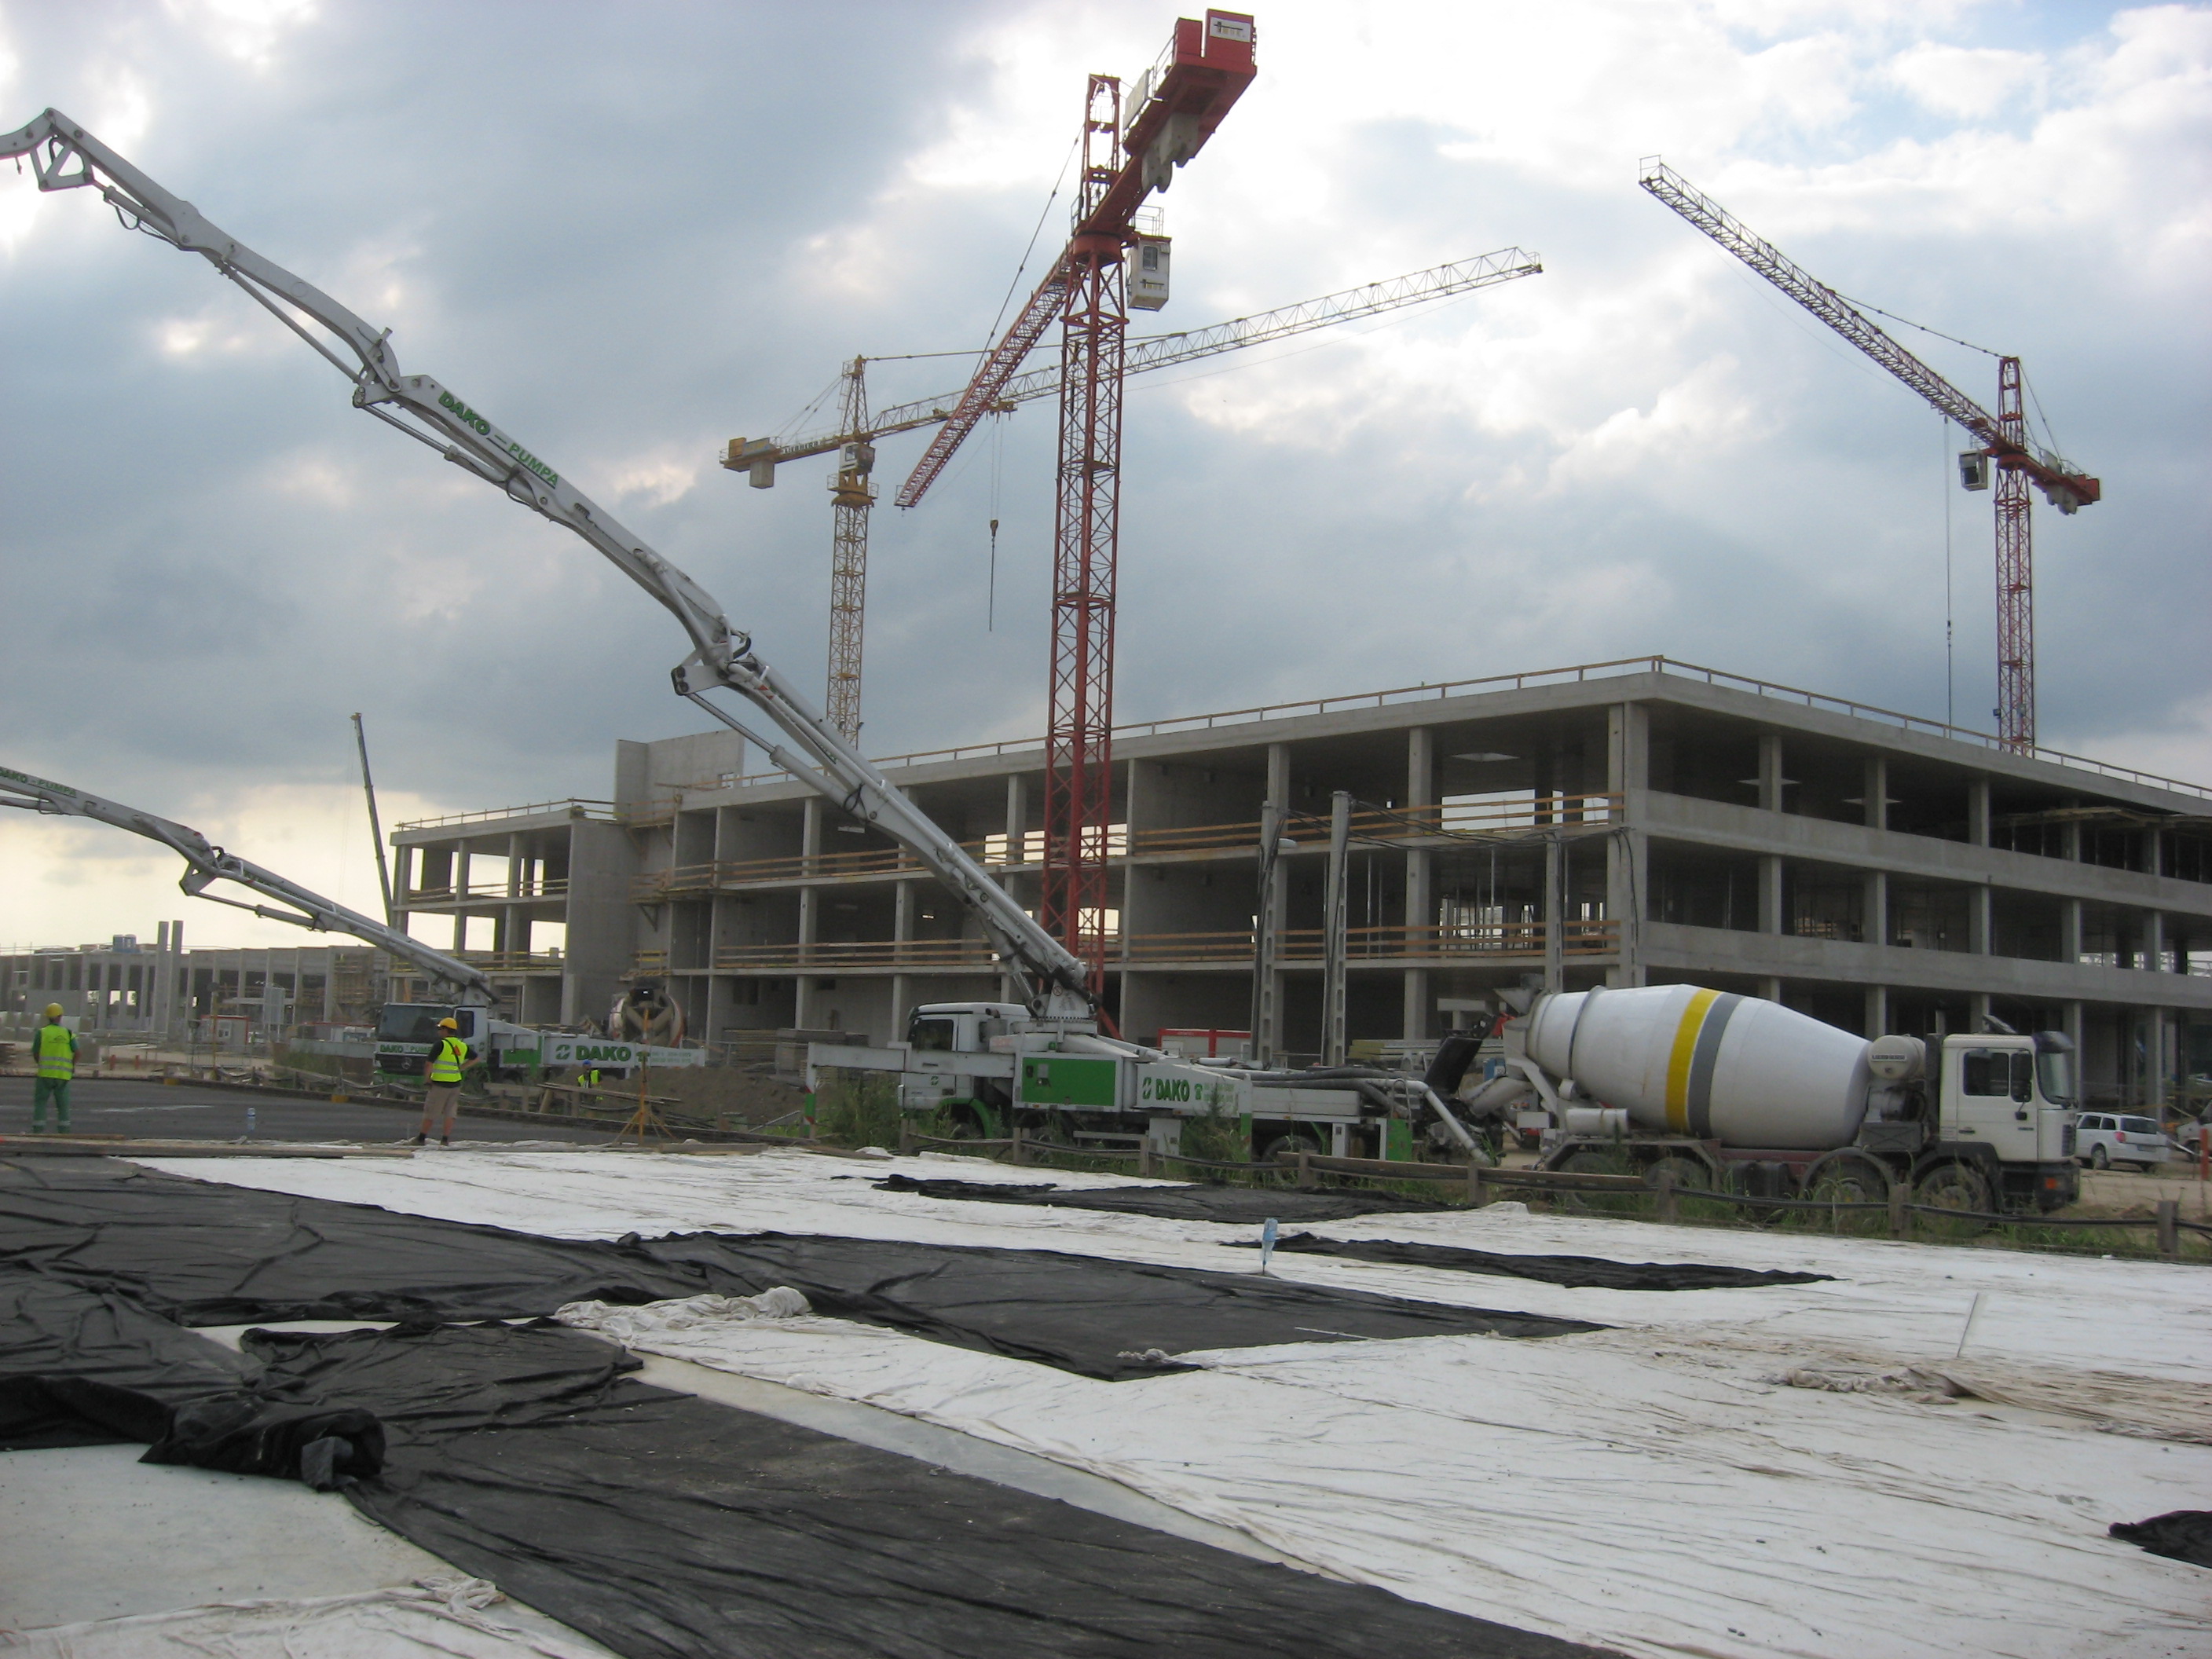 2009 őszétől 2010 év végéig 800 millió eurós beruházás keretében Mercedes autógyár épült Kecskeméten. Ezidő alatt TBG kecskeméti betonüzeméből 14.405 m3 beton került kiszállításra az építkezésre. A kivitelezés során szolgáltatott betonból nemcsak az épület szerkezeti elemei, hanem nagy mennyiségű ipari padló is készült.